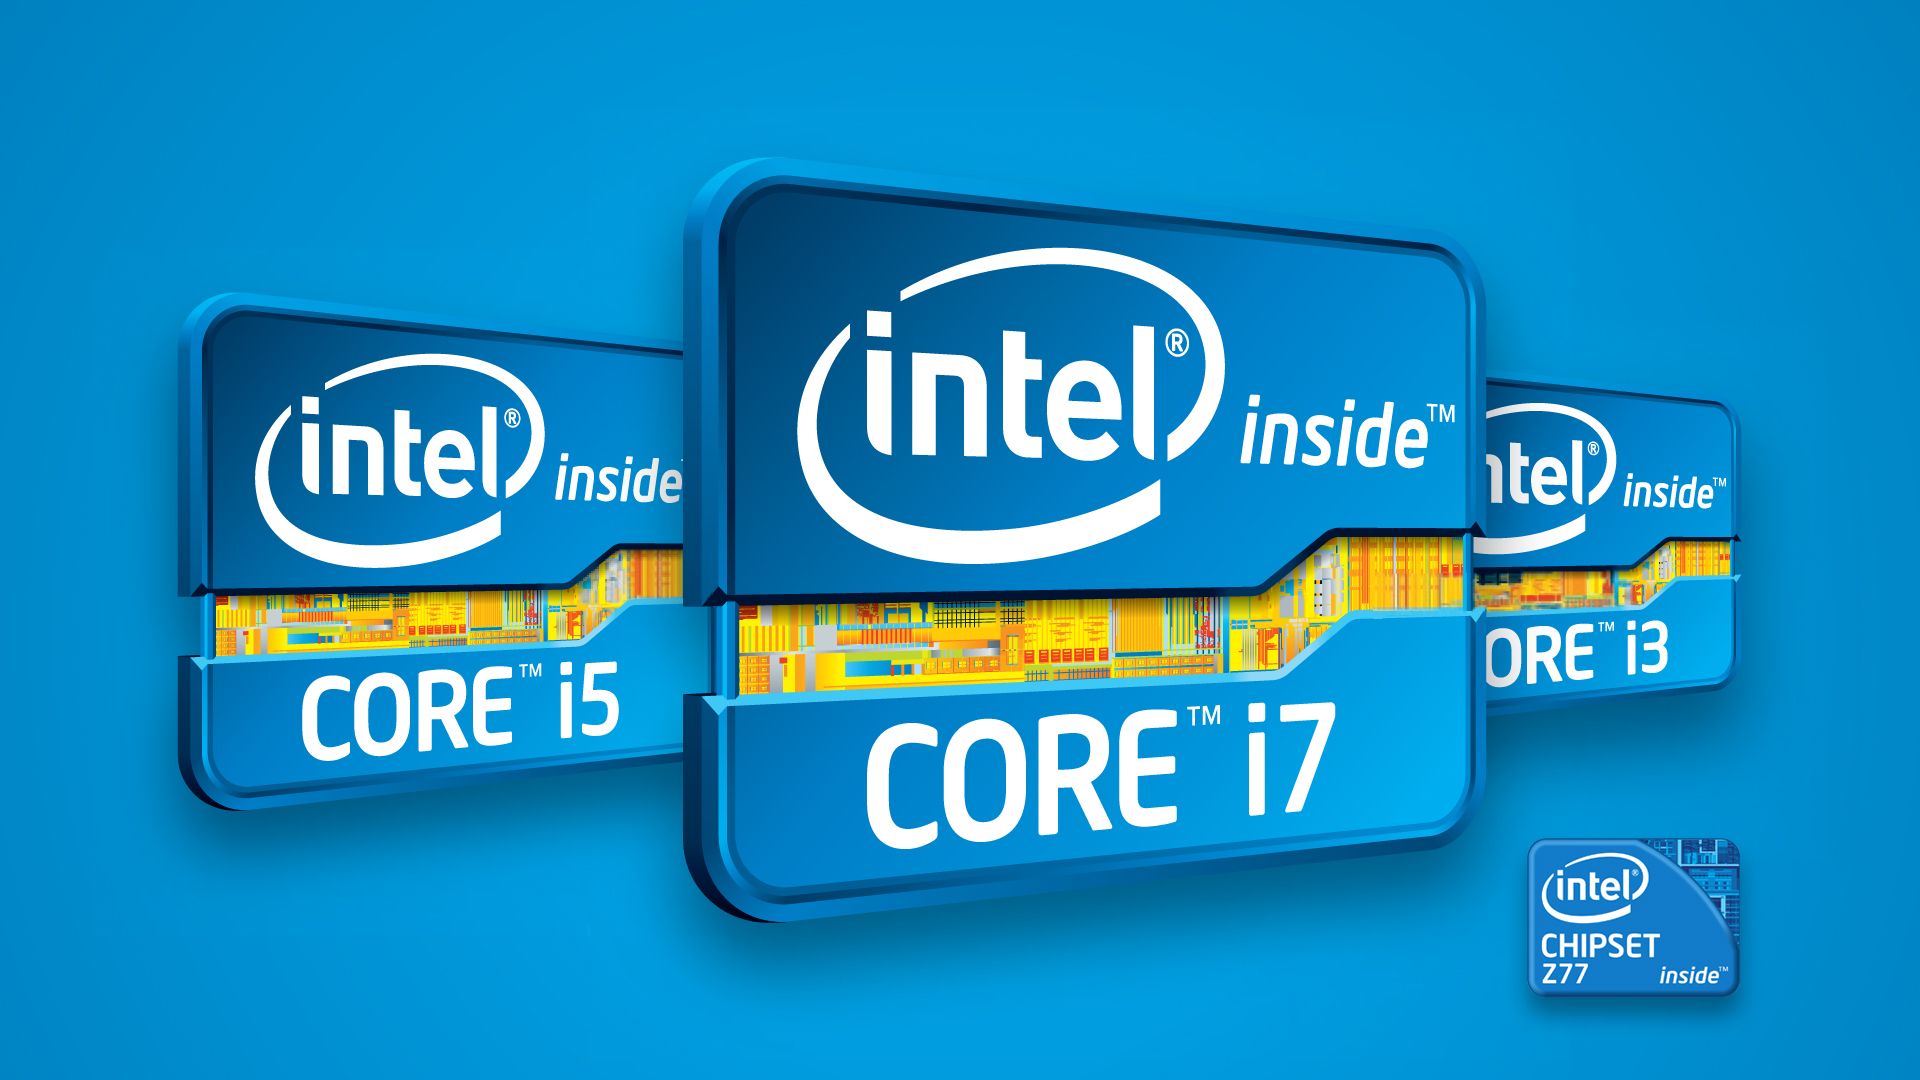 Intel I7 Wallpaper. I7 Extreme Wallpaper, I7 Processor Wallpaper and I7 Wallpaper